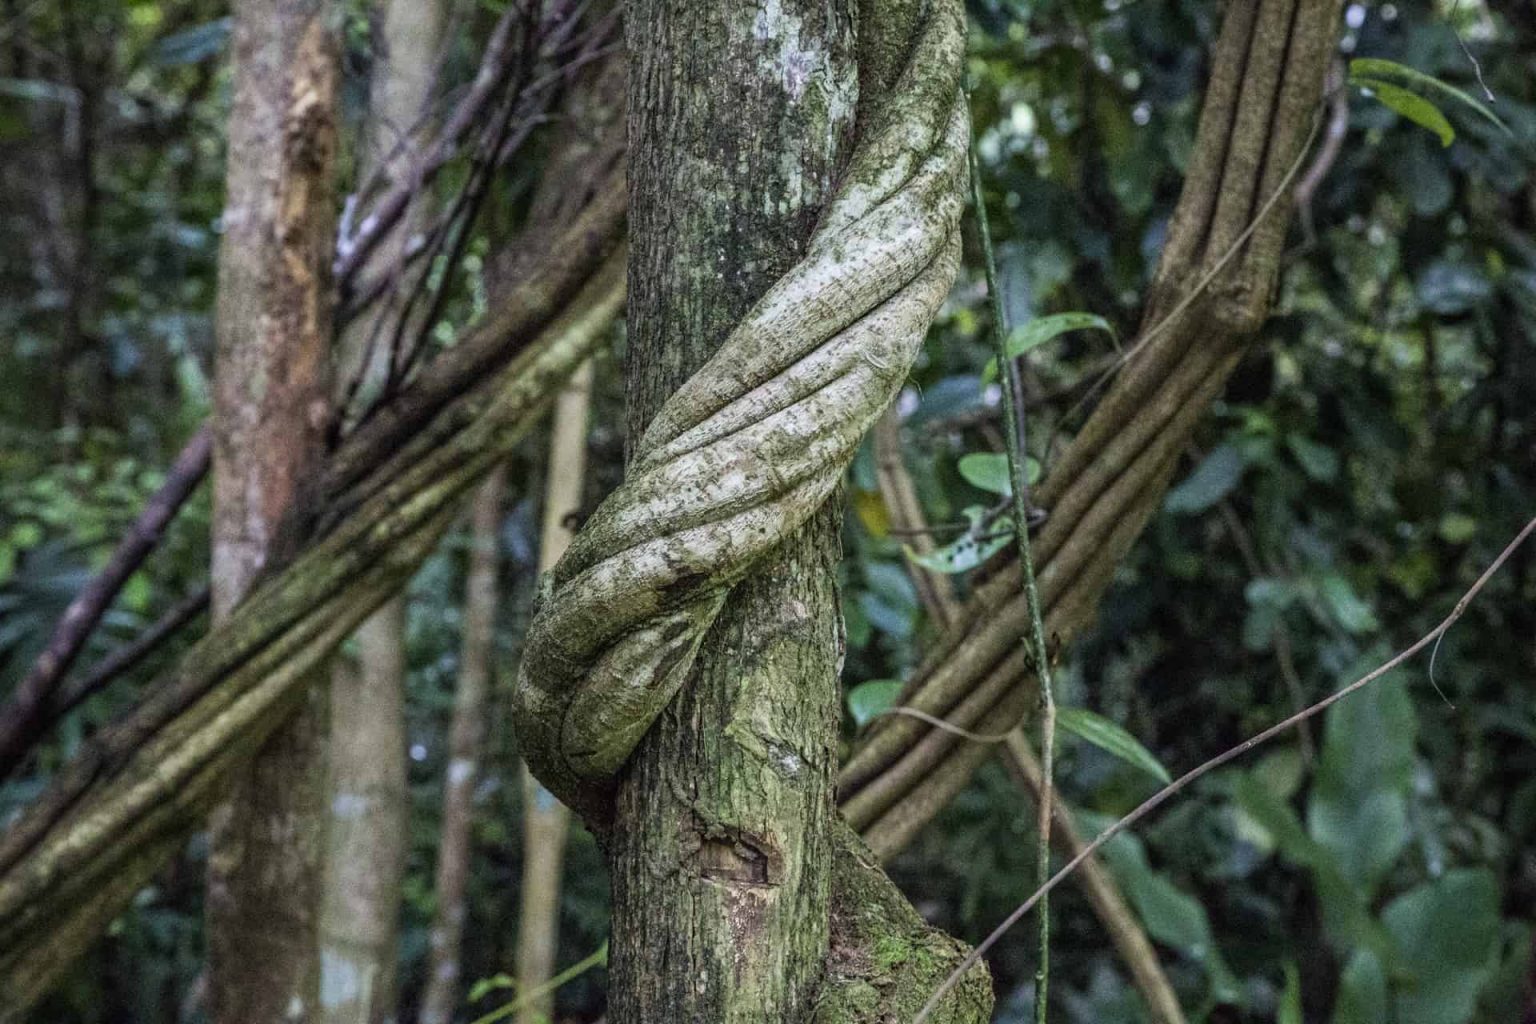 Image show ayahuasca vine Banisteriopsis caapi.